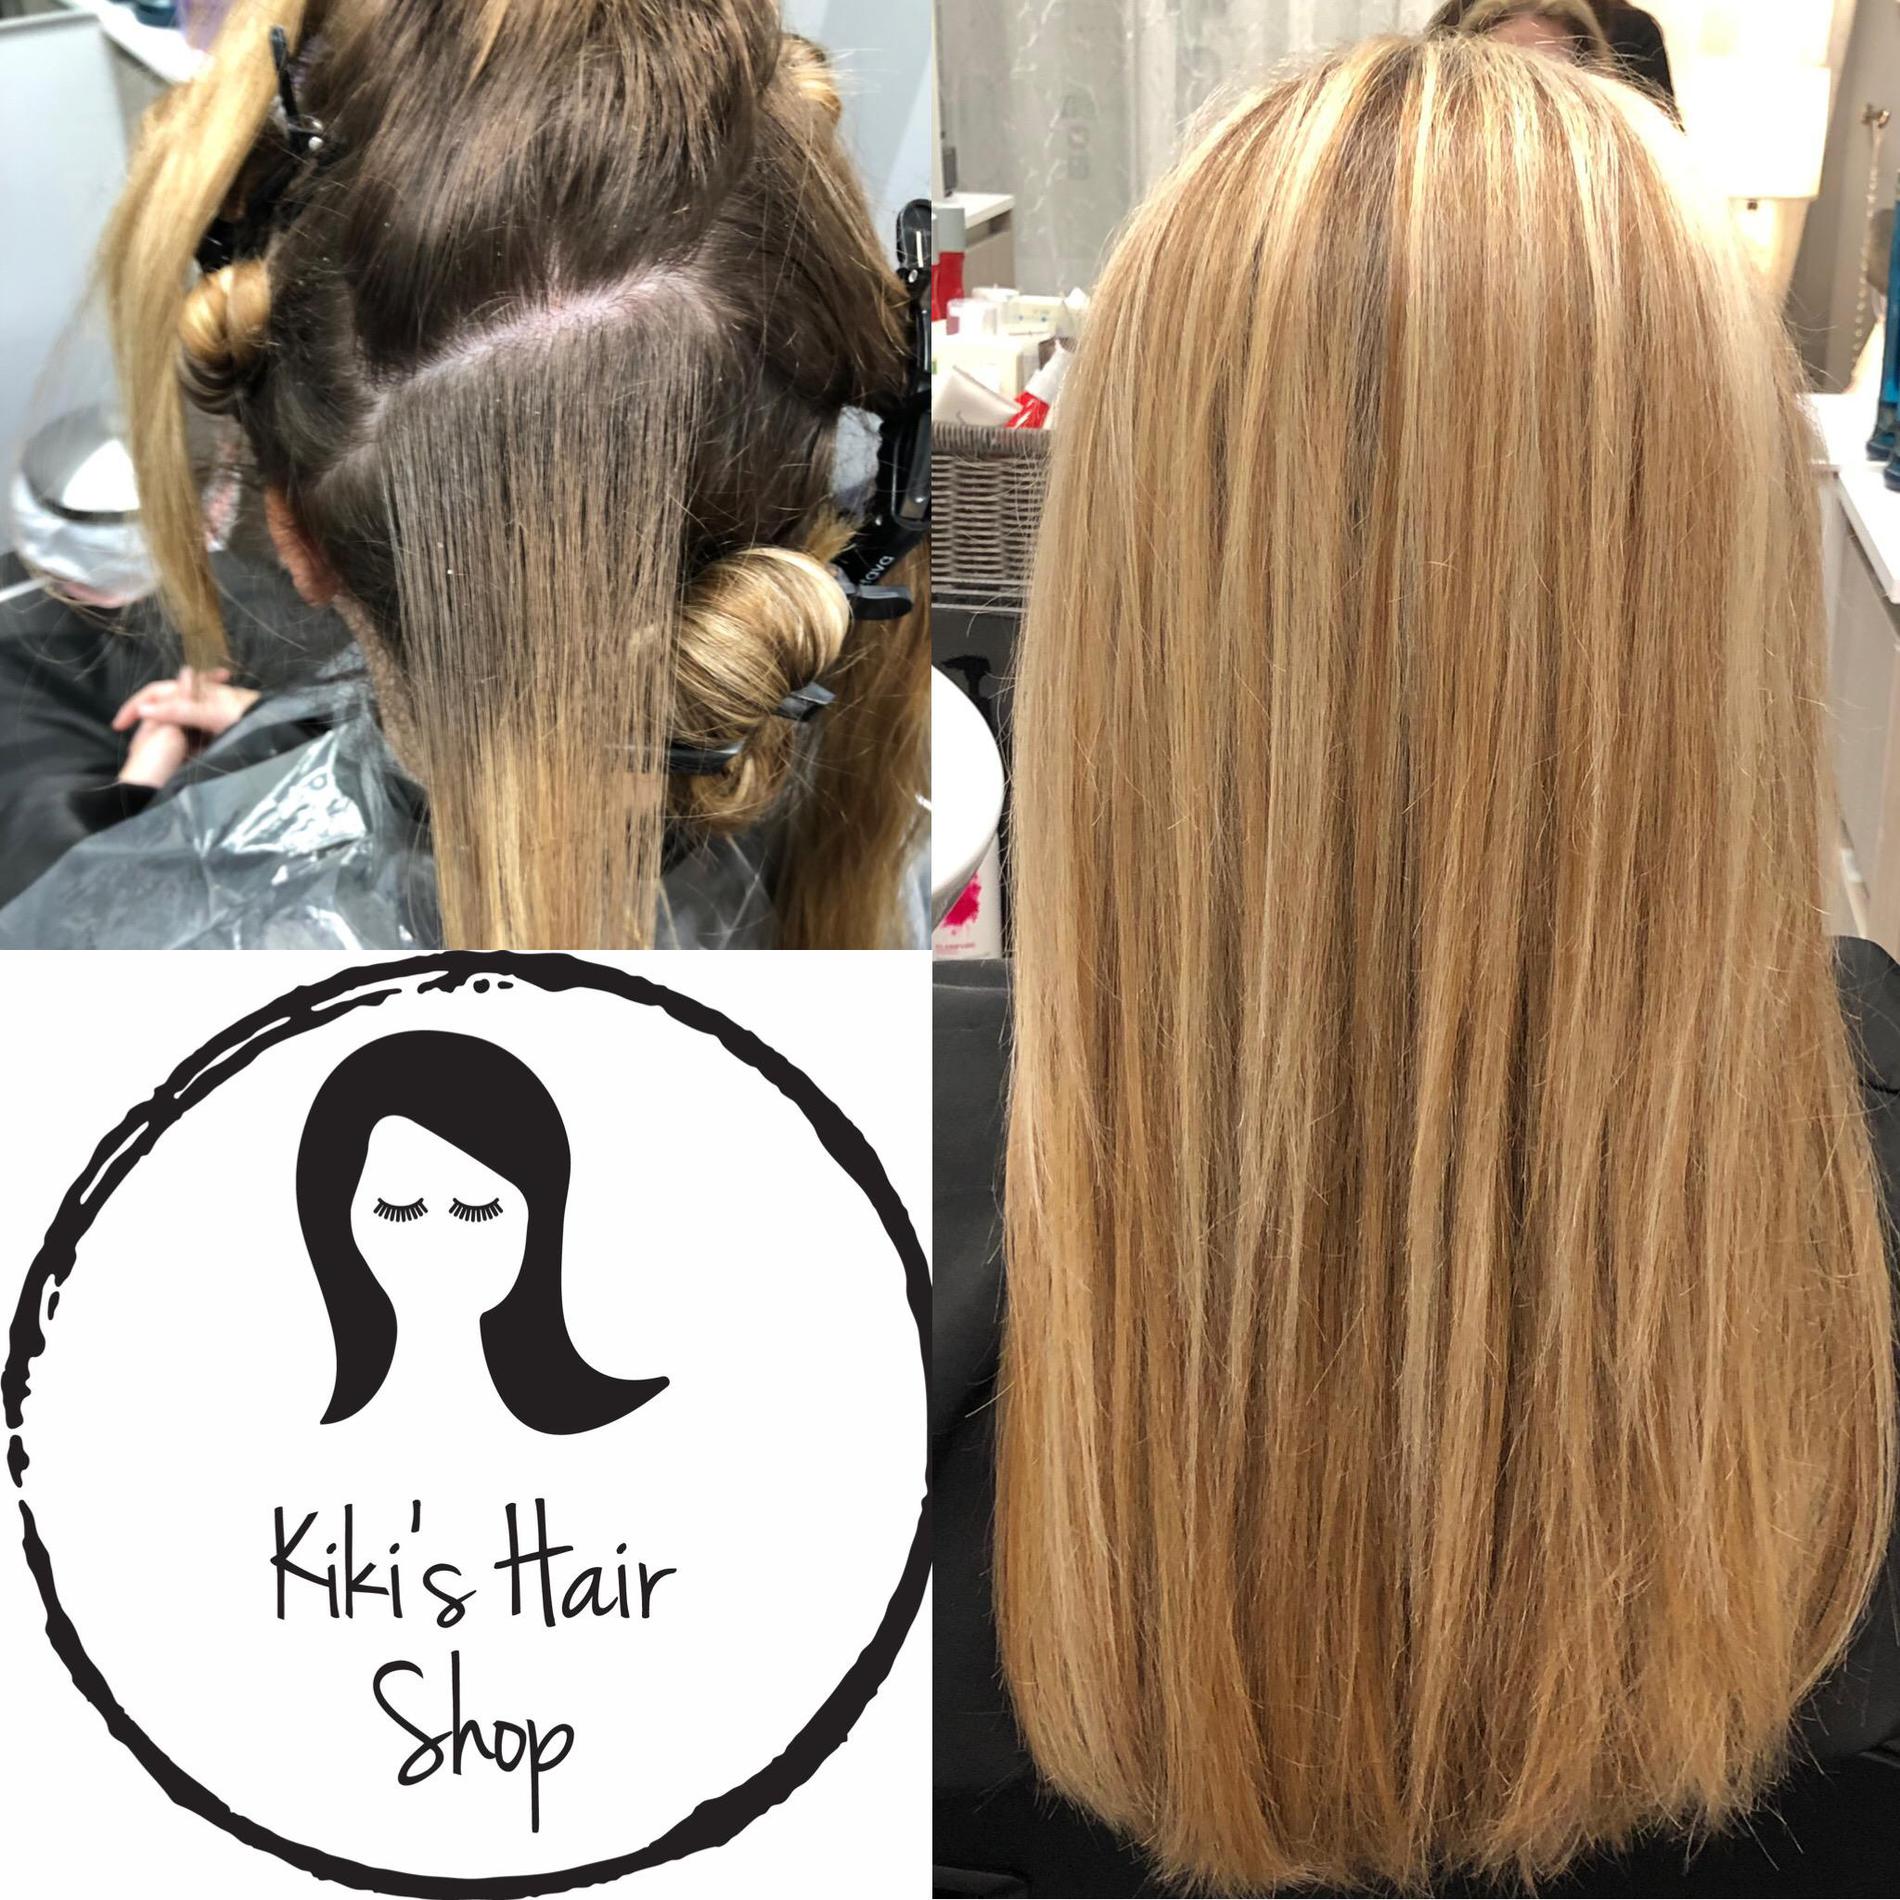 Images Kiki's Hair Shop